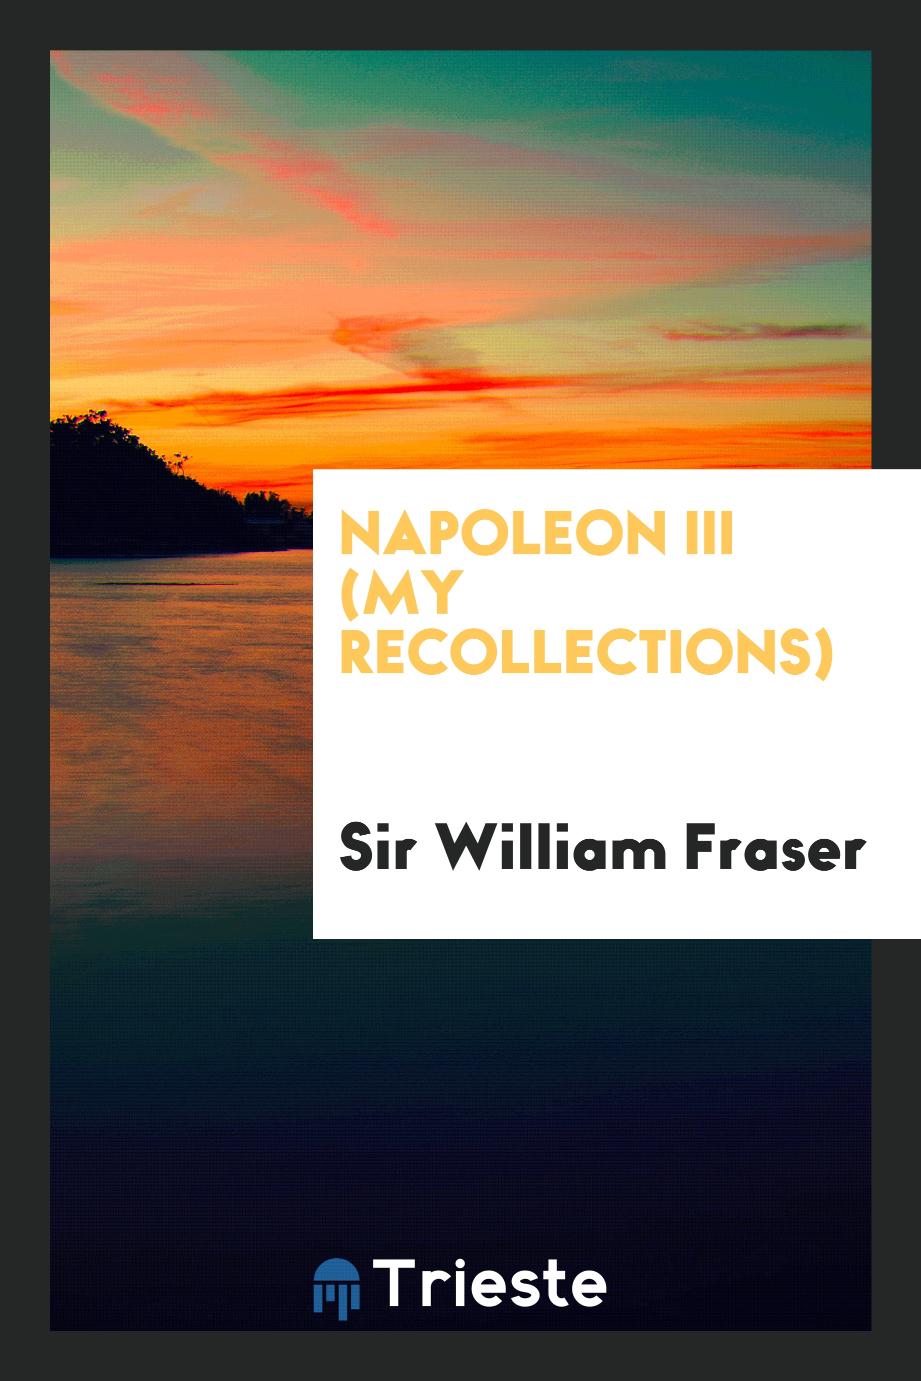 Napoleon III (my recollections)